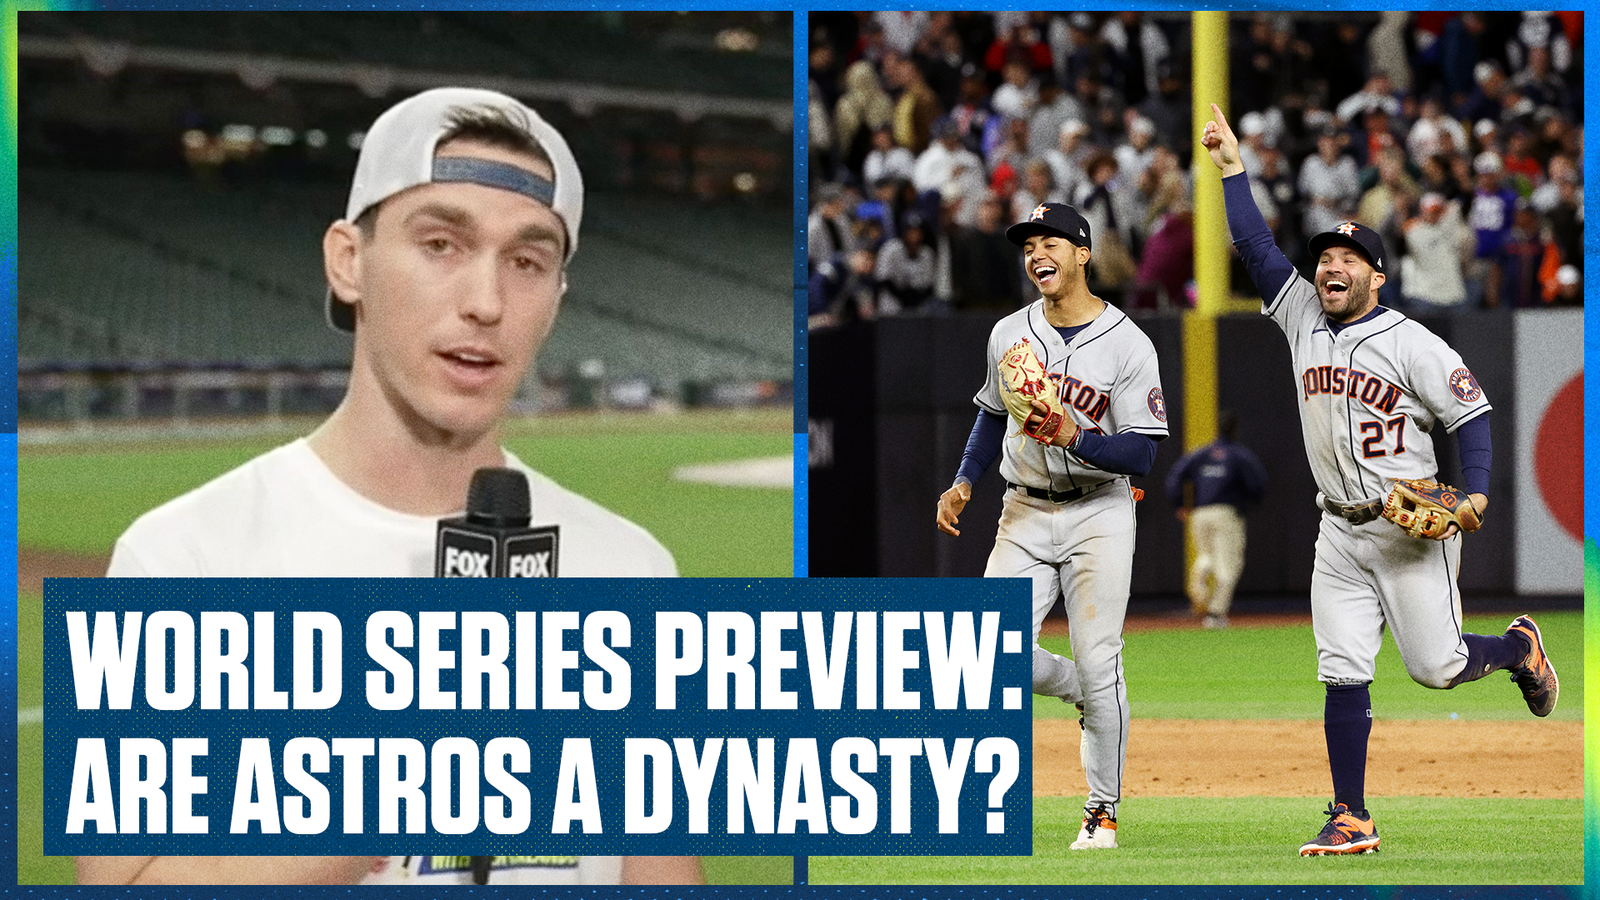 Προεπισκόπηση World Series: Κέρδισε ή χάνεις, είναι το Astros μια δυναστεία;